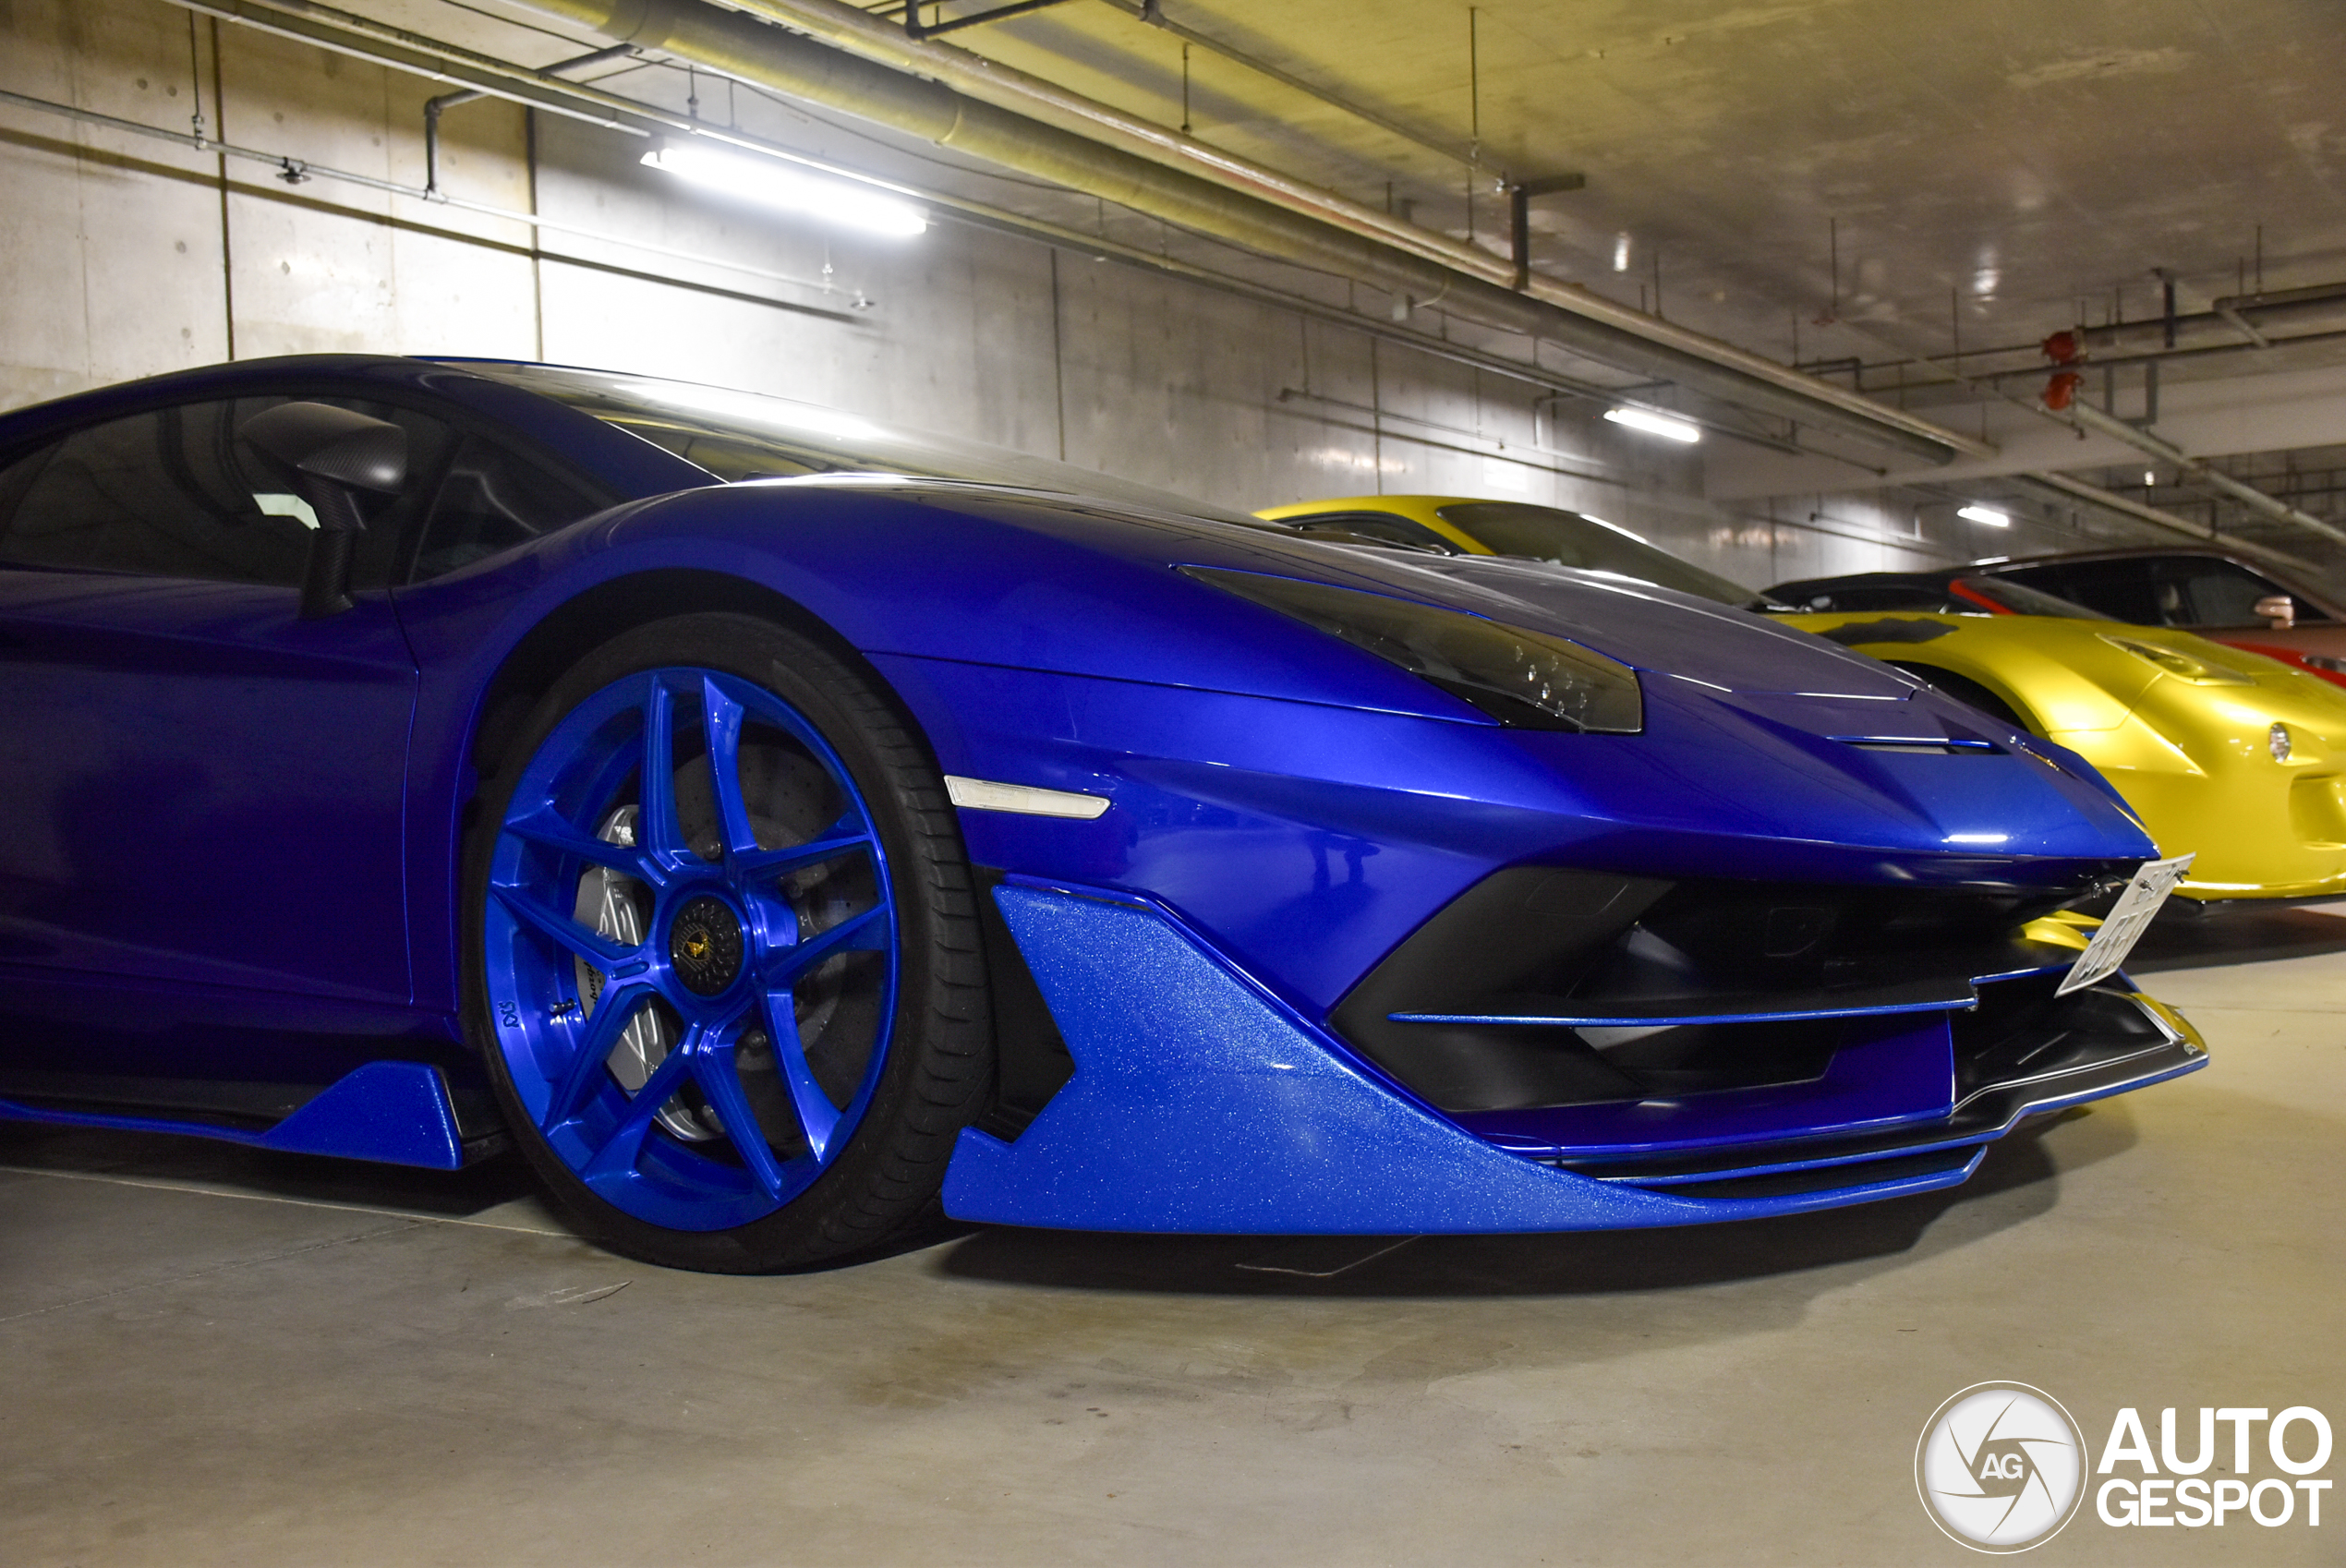 Knalblauwe Lamborghini is niet de meest opmerkelijke auto in deze combo